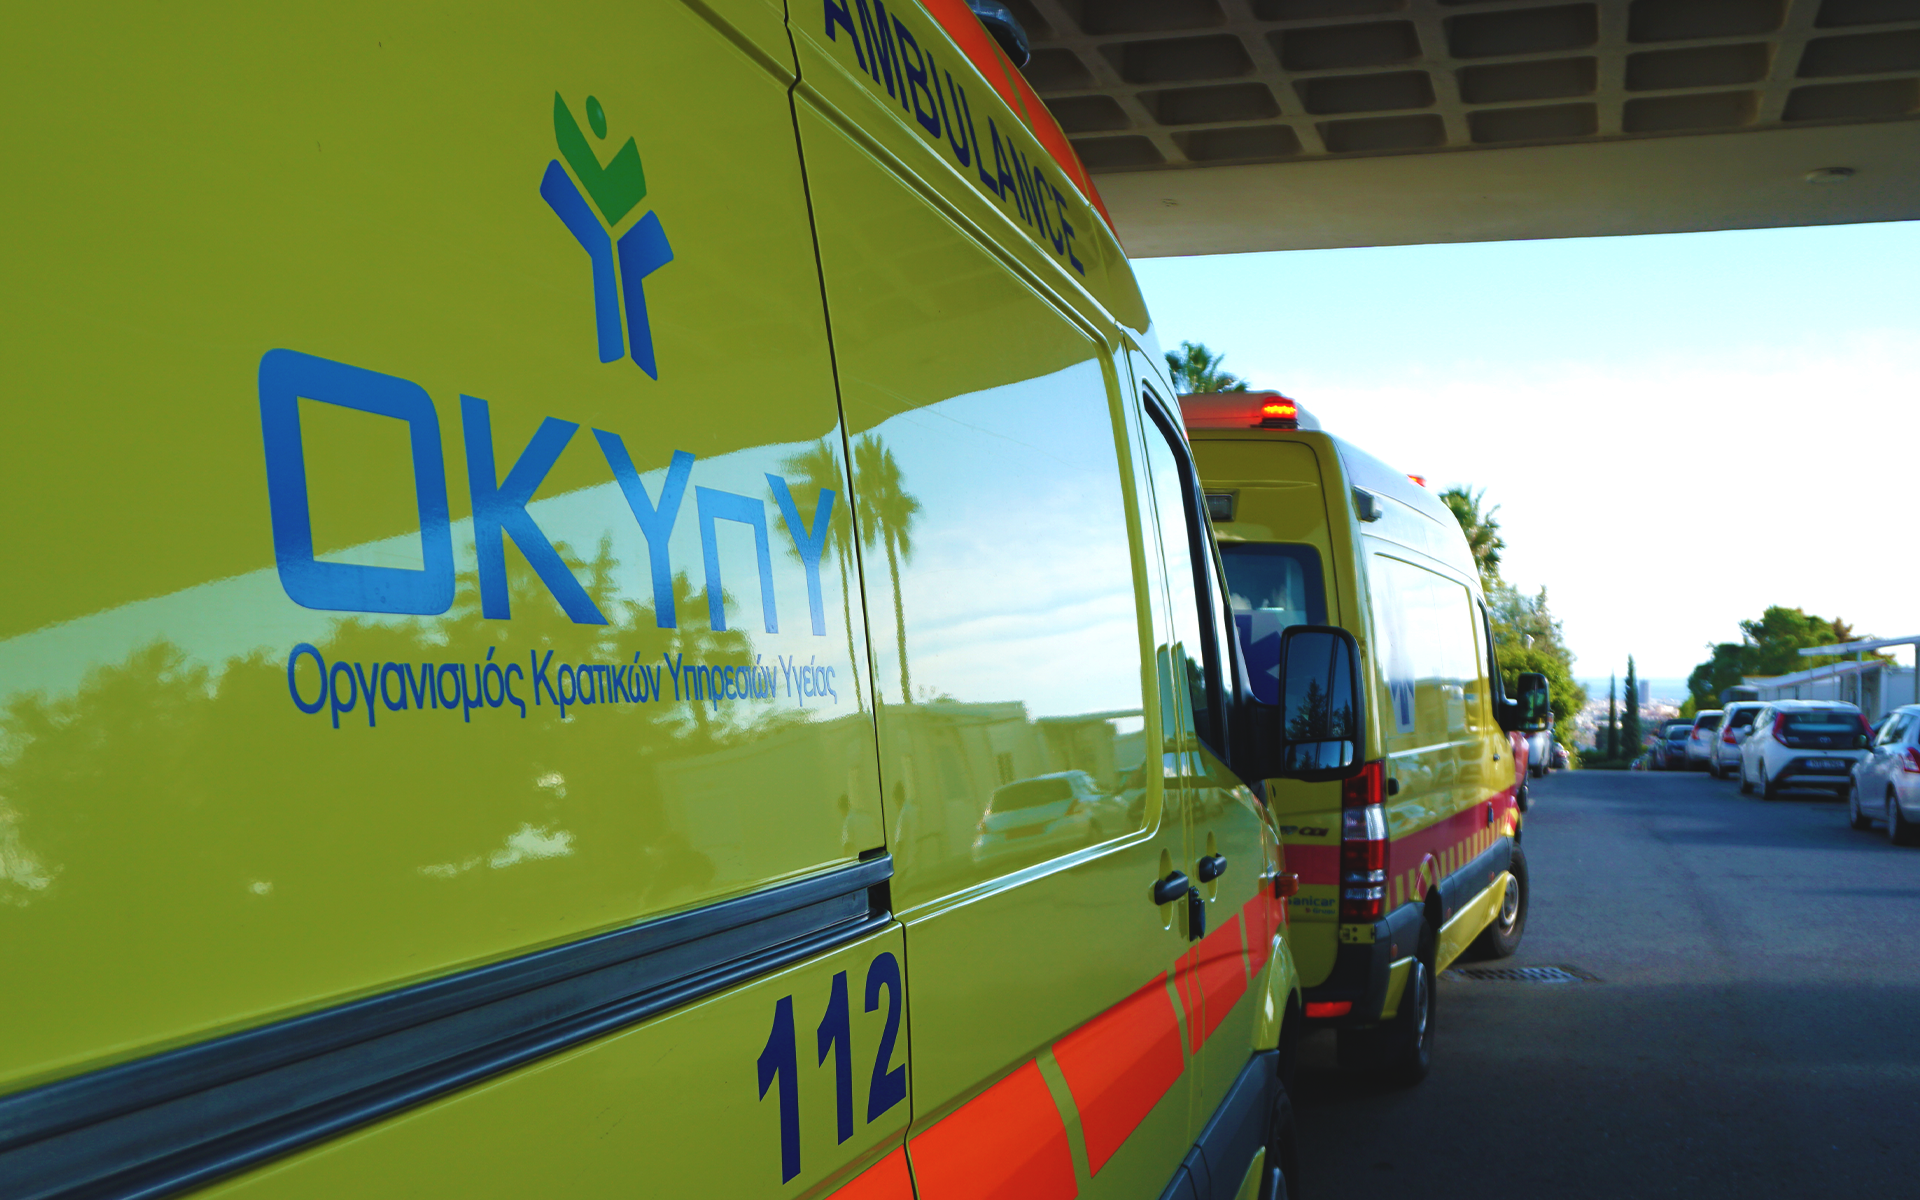 13χρονος ποδηλάτης συγκρούστηκε με όχημα στην Πάφο-Μεταφέρθηκε στο Μακάρειο νοσοκομείο